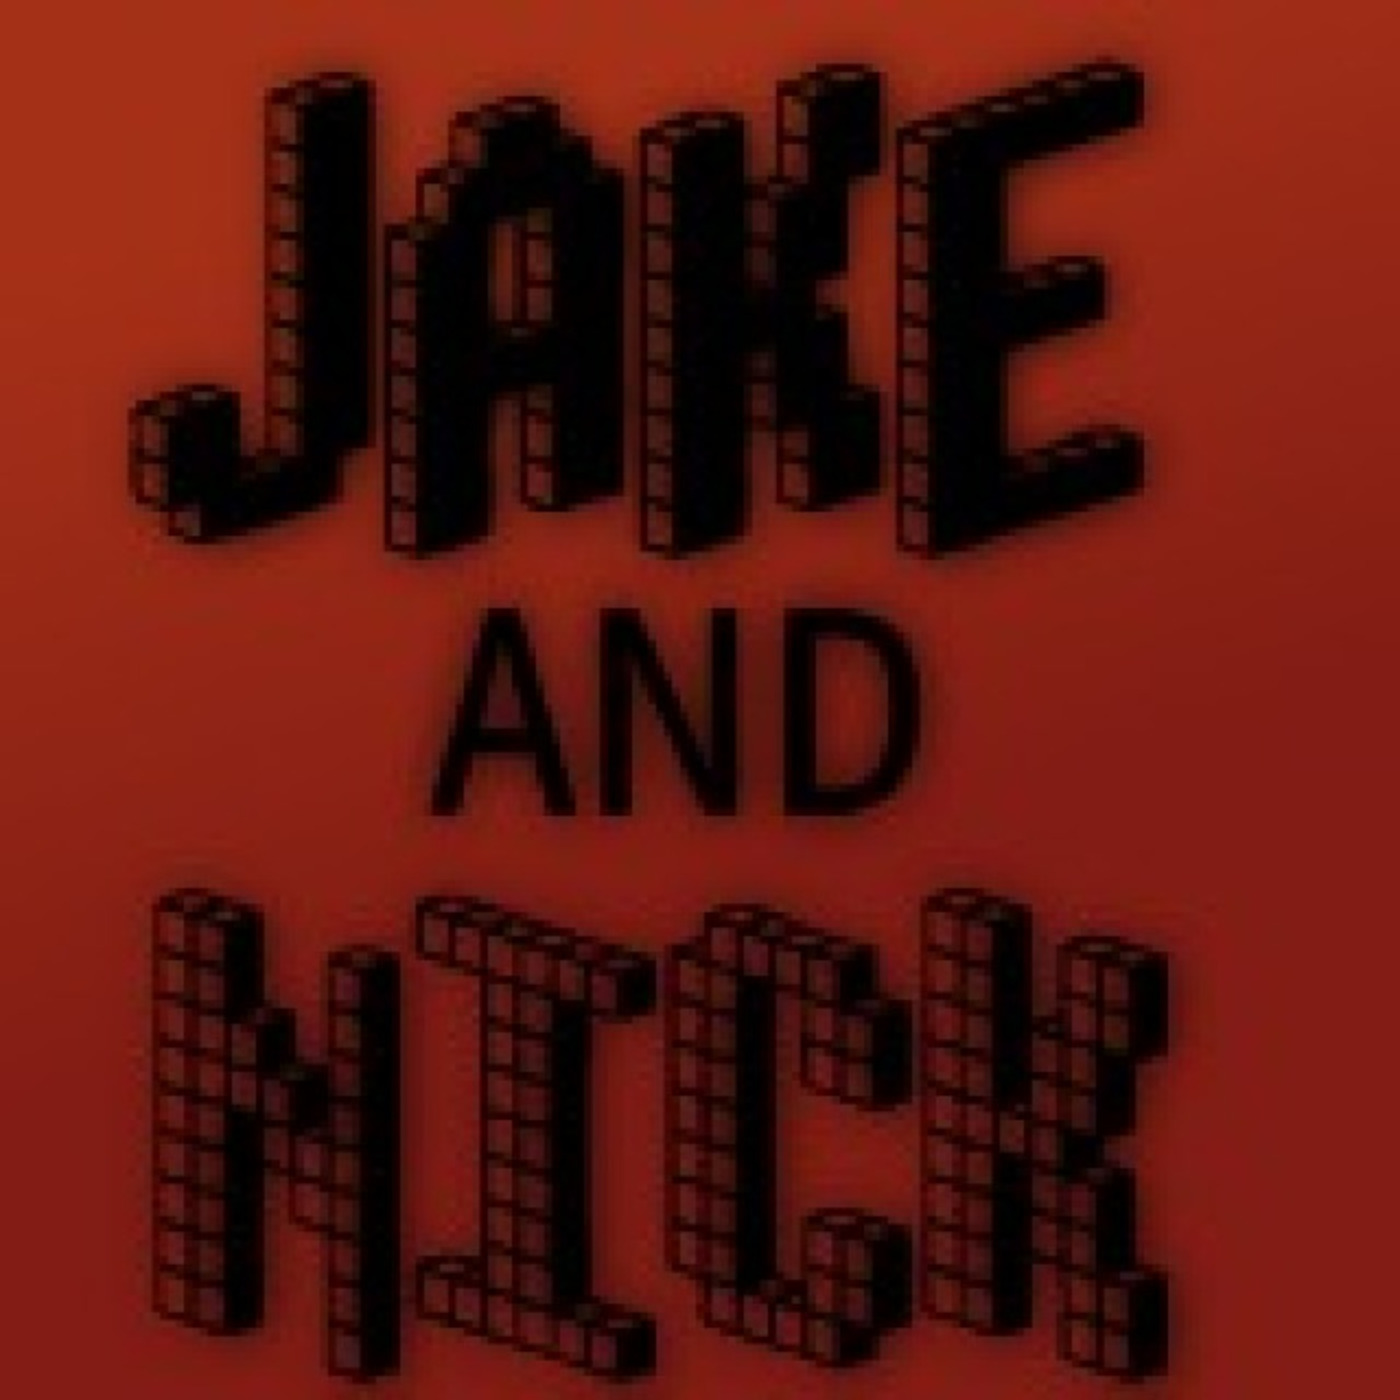 Nick and Jake